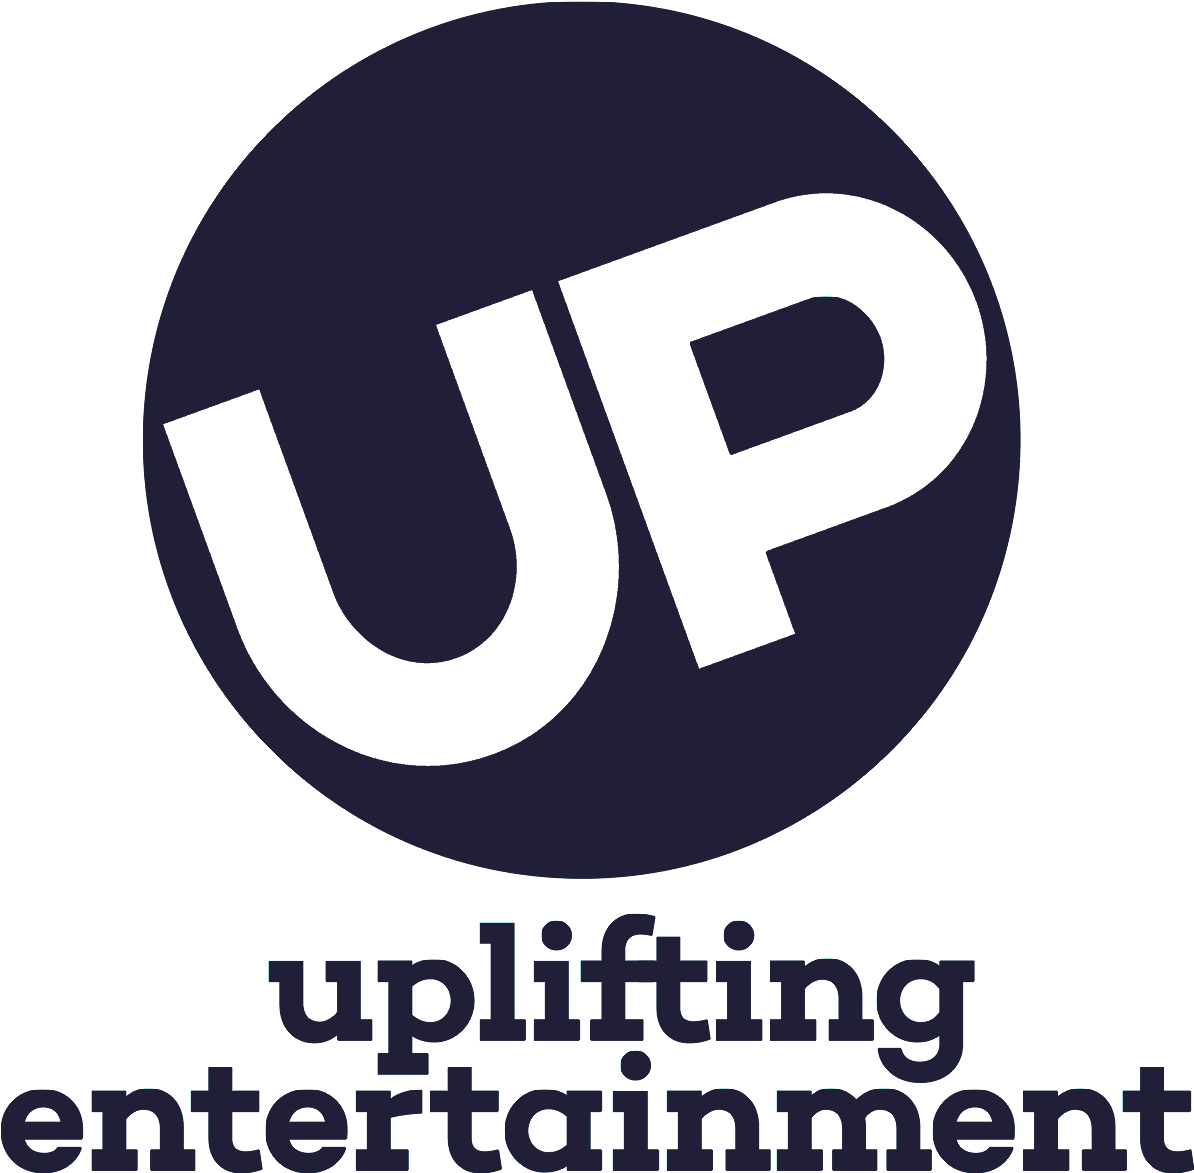 Uptv New Logo December 2014 - Up Tv Logo Png (1193x1191), Png Download